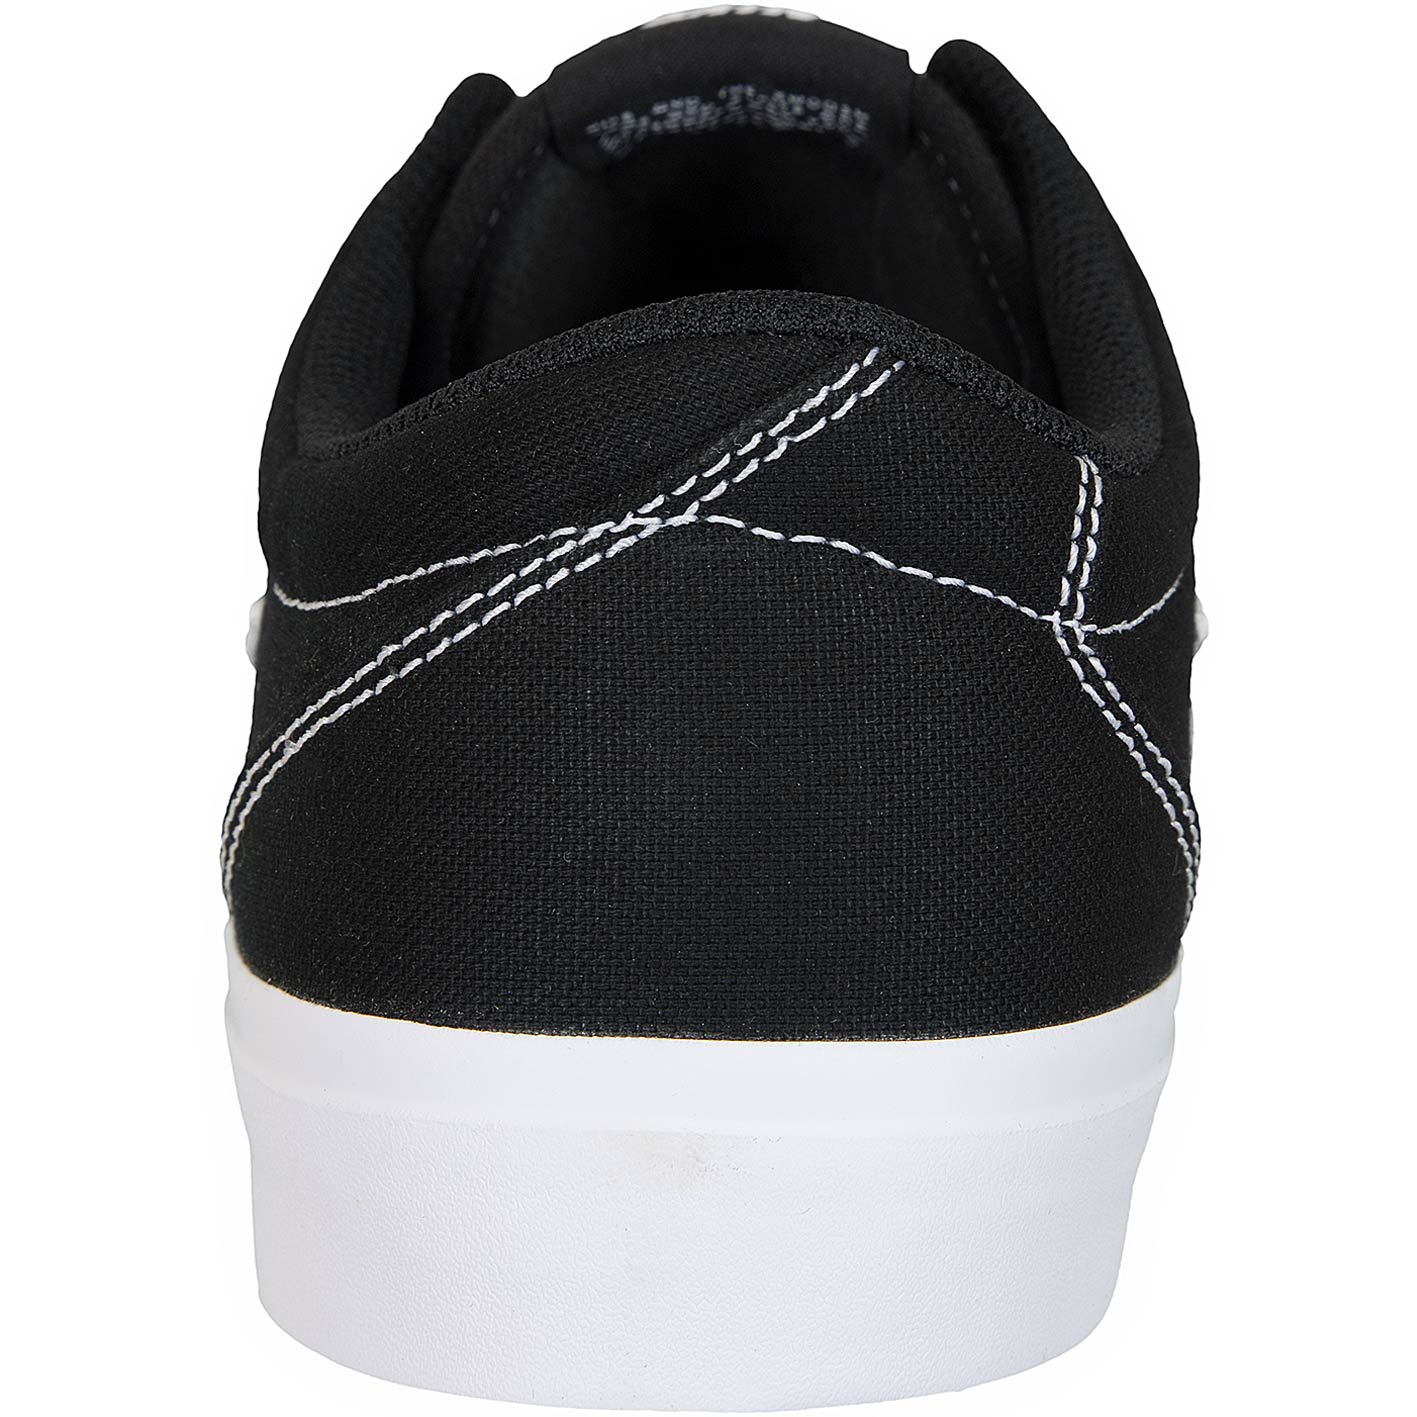 ☆ Nike SB Sneaker Charge Canvas schwarz/weiß - hier bestellen!